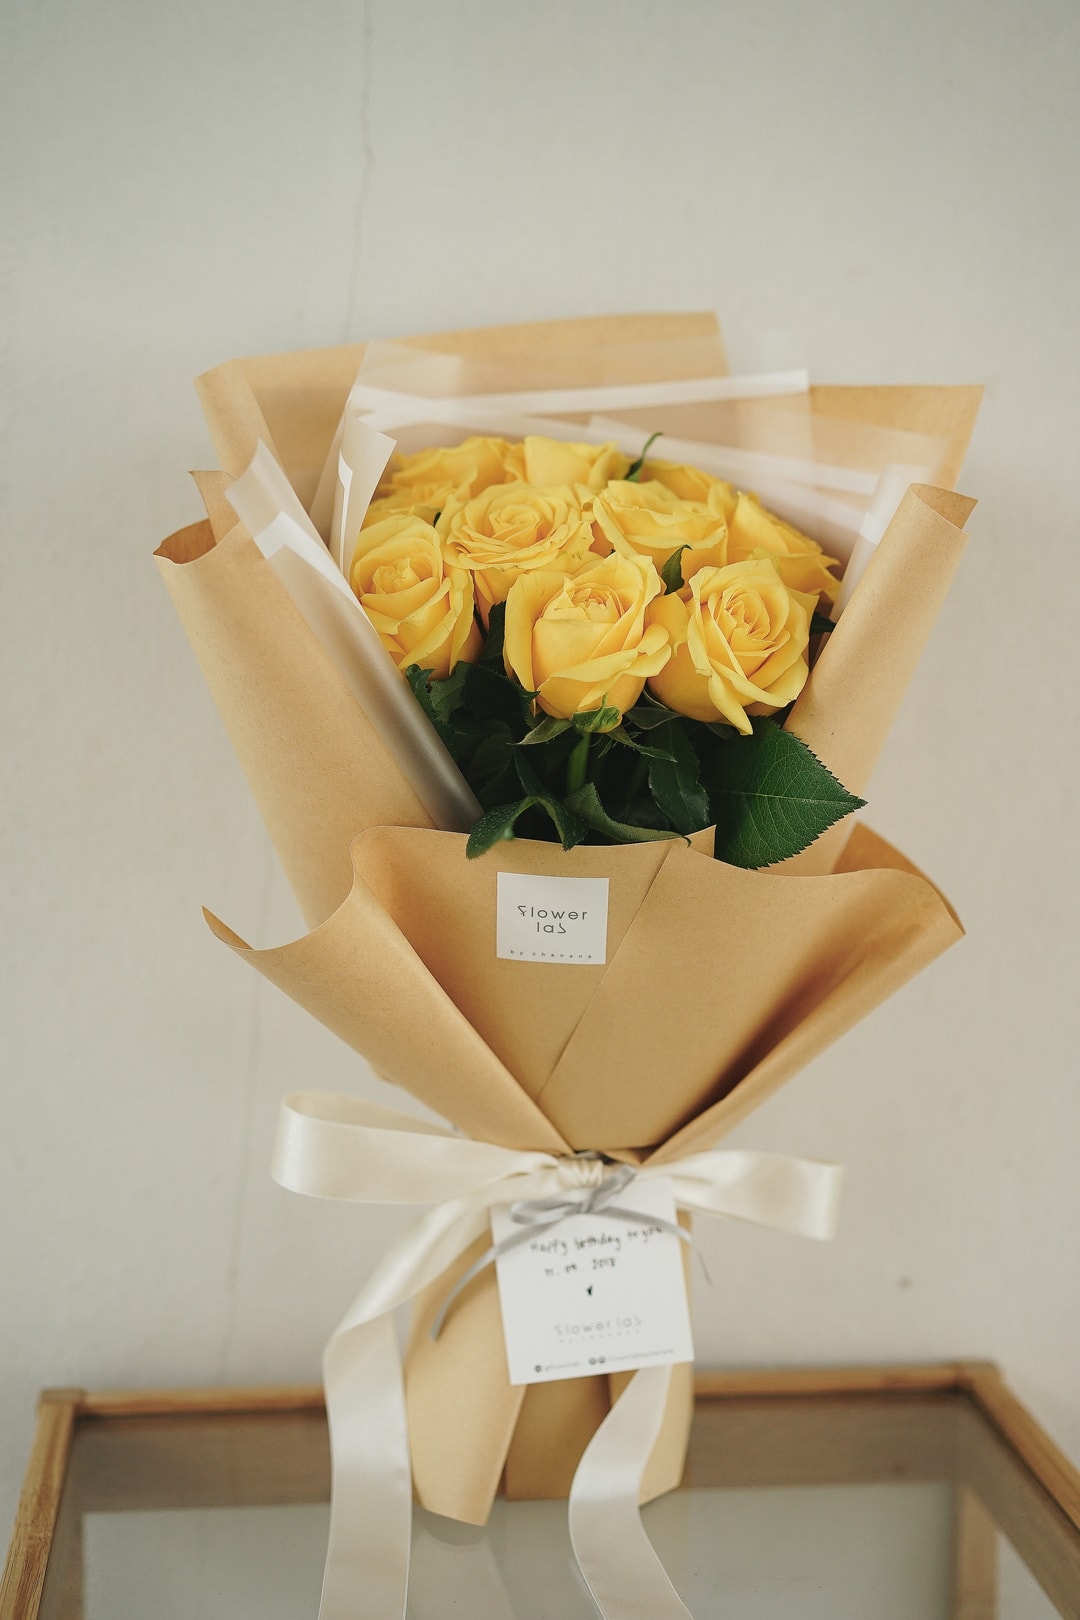 ช่อดอกกุหลาบสีเหลือง - S02 - Flowerlab By Chanana